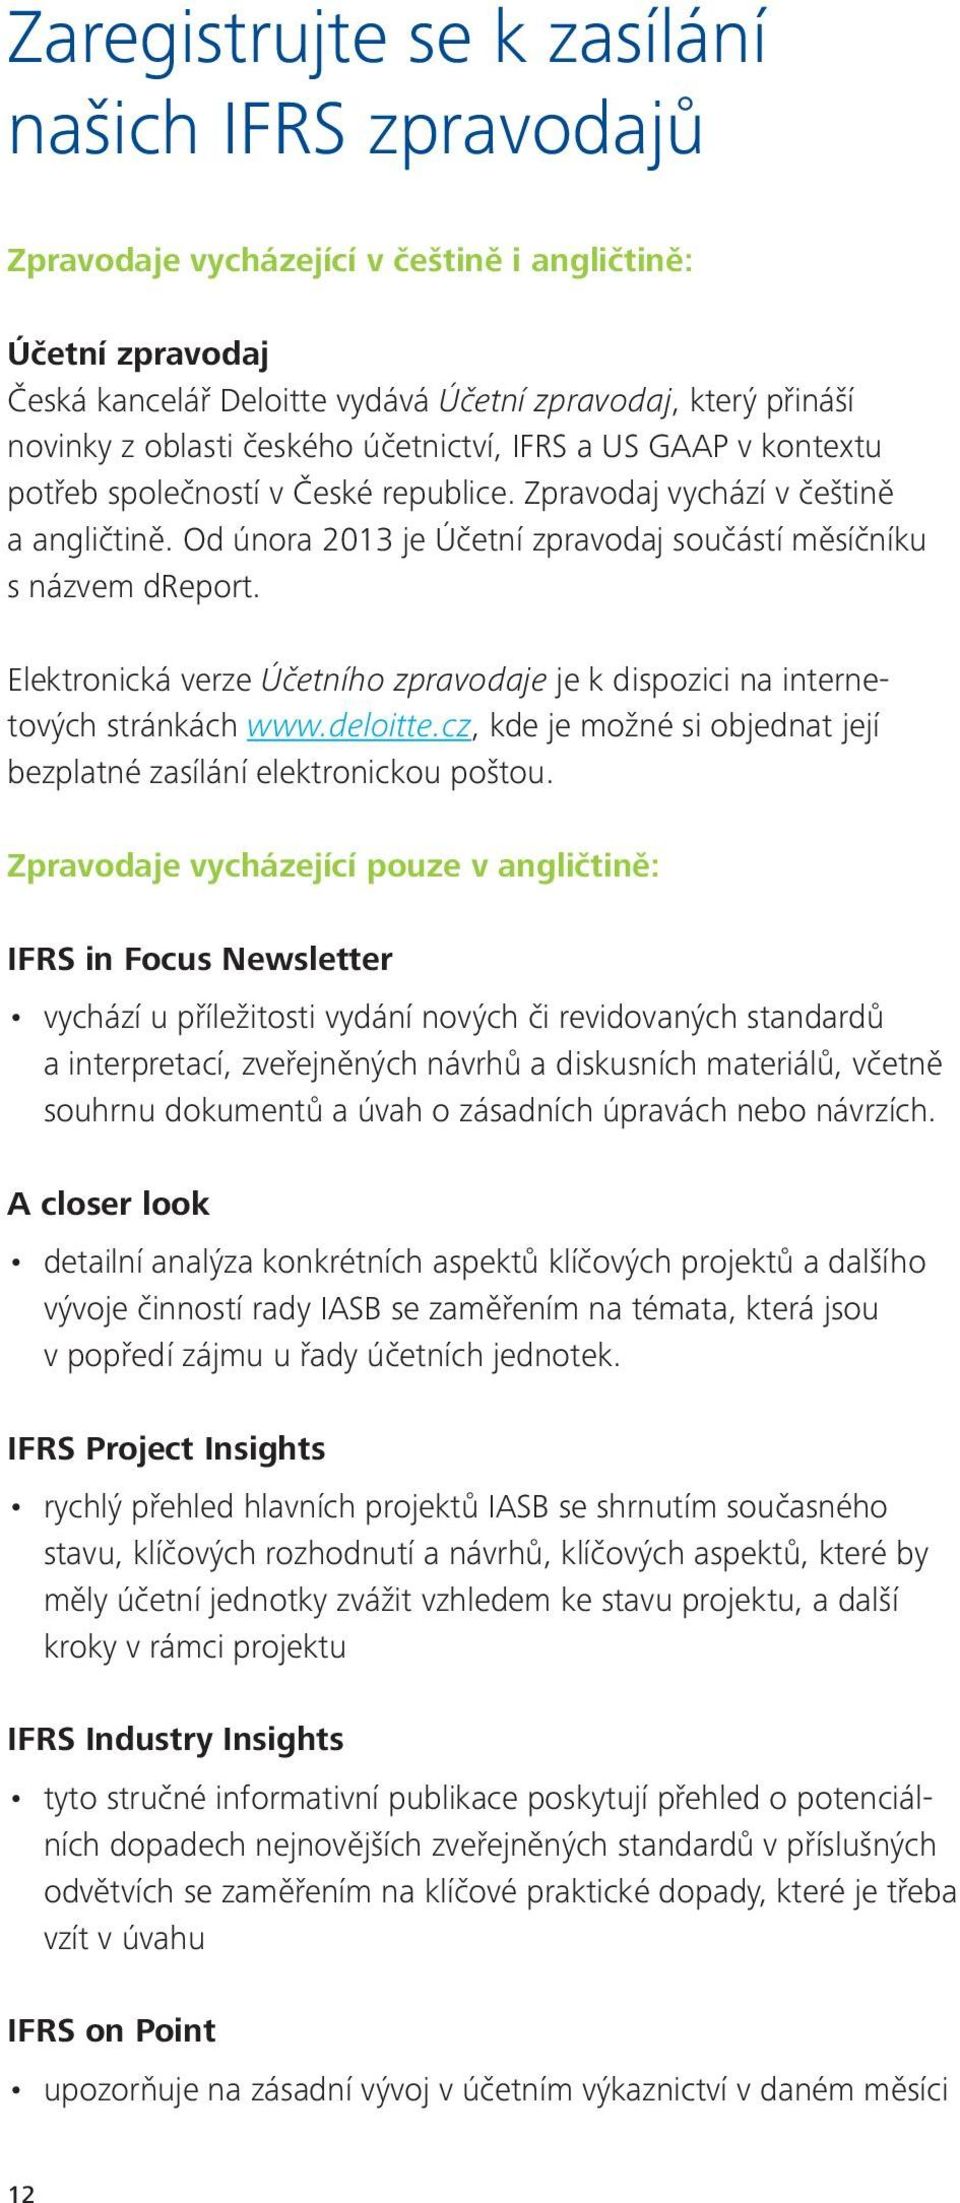 Elektronická verze Účetního zpravodaje je k dispozici na internetových stránkách www.deloitte.cz, kde je možné si objednat její bezplatné zasílání elektronickou poštou.